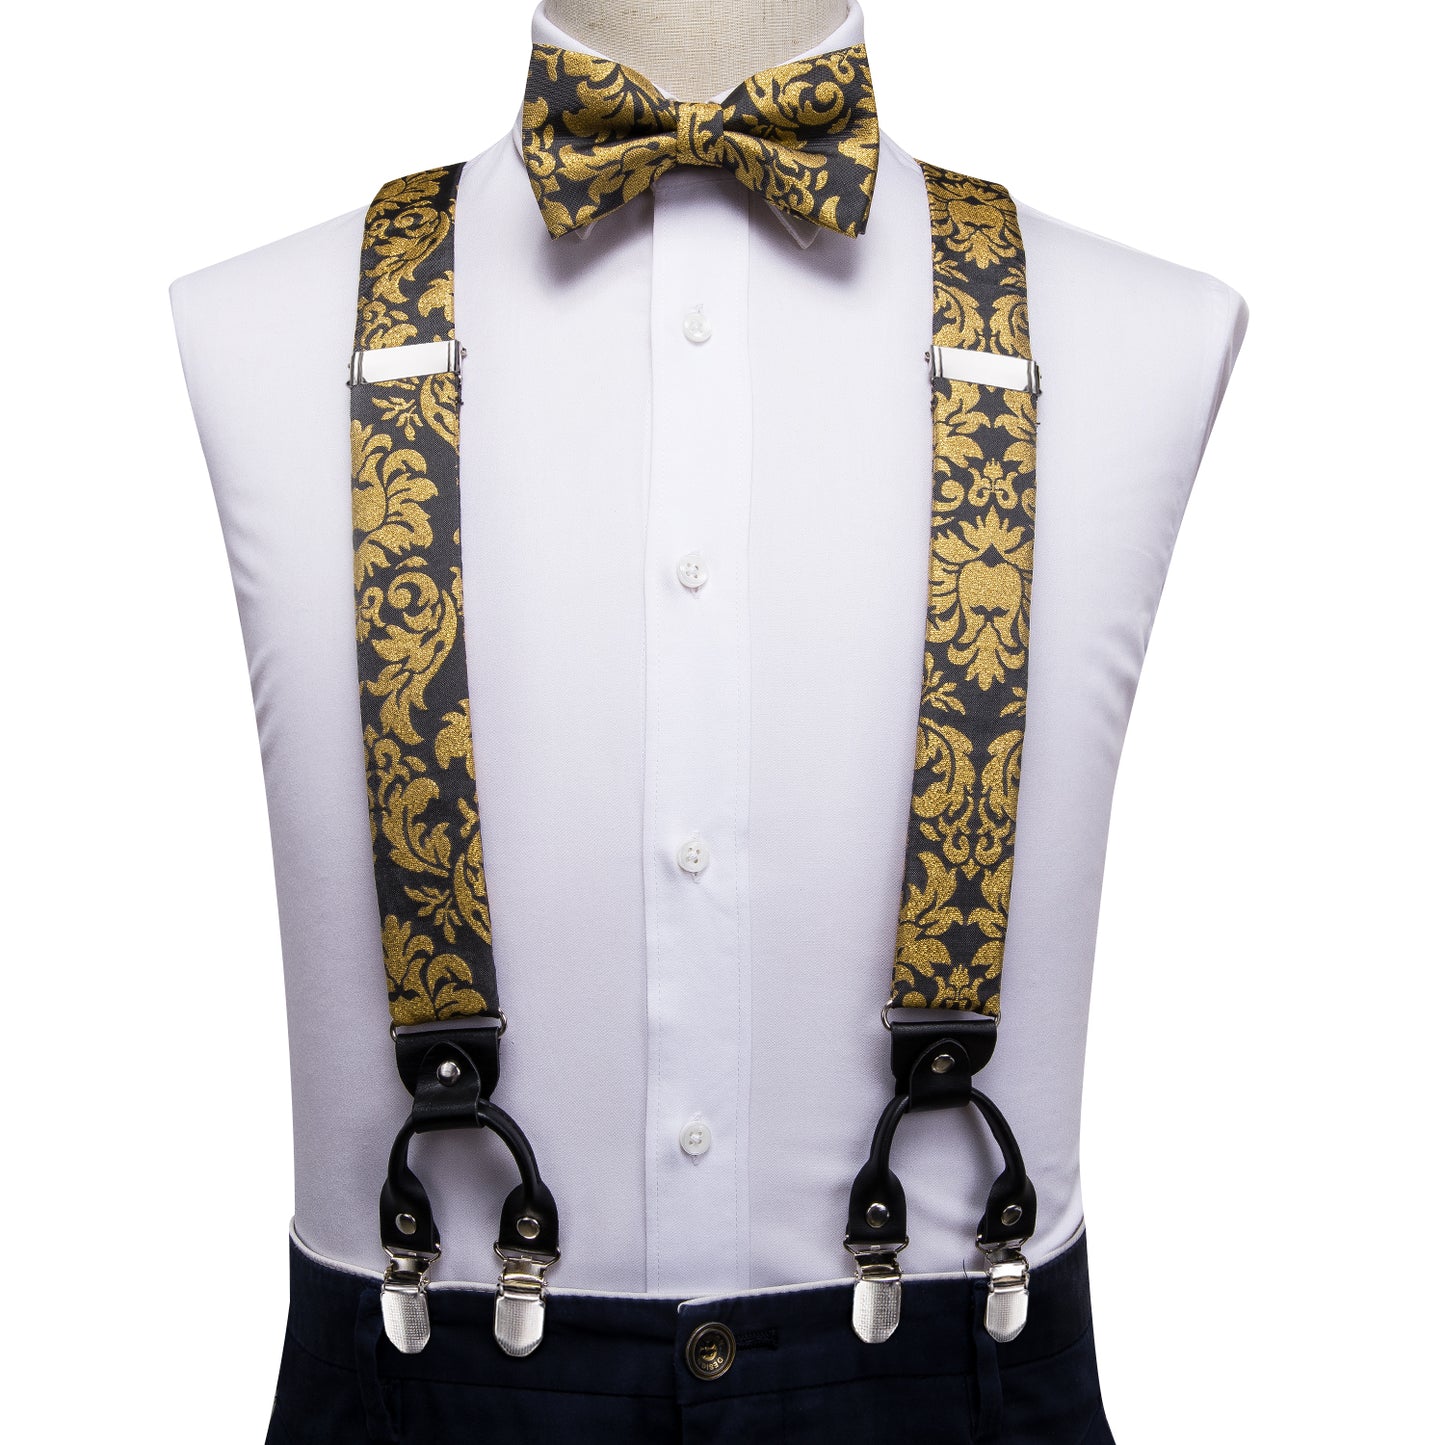 BD3027 Men's Braces Designer Clip Suspender Set [Gold Damask]